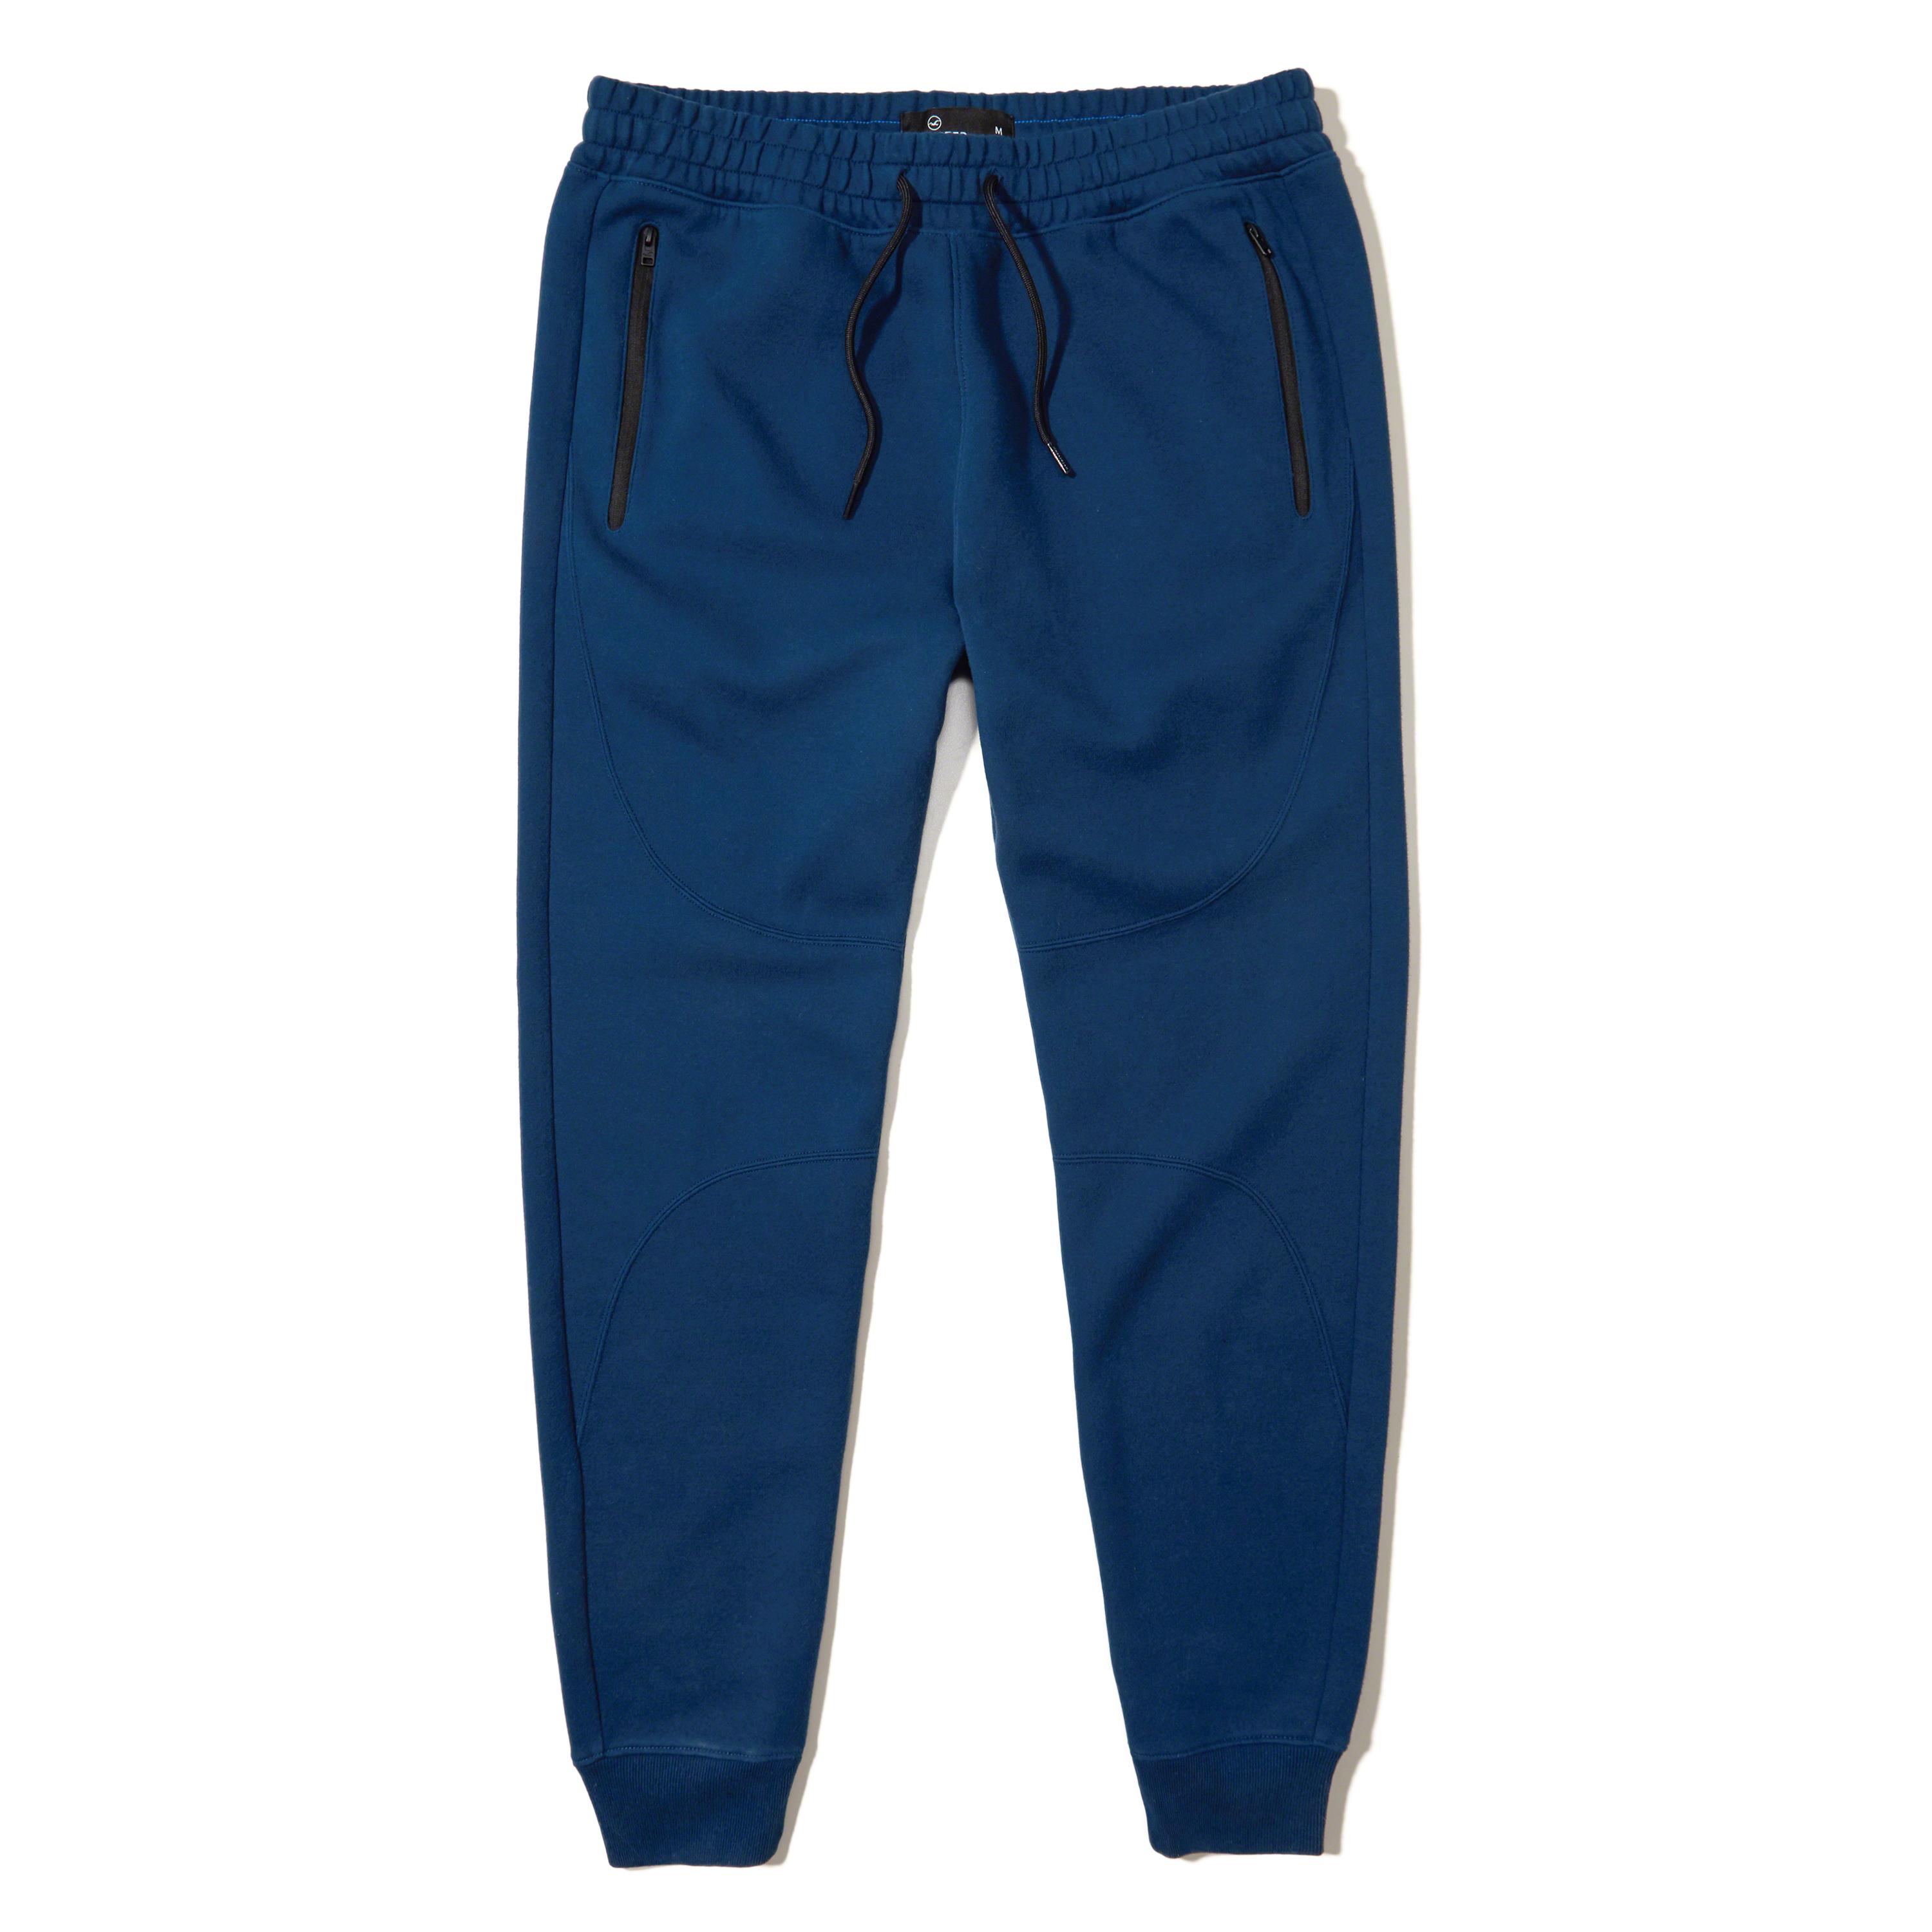 Lyst - Hollister Super Skinny Neoprene Jogger Pants in Blue for Men